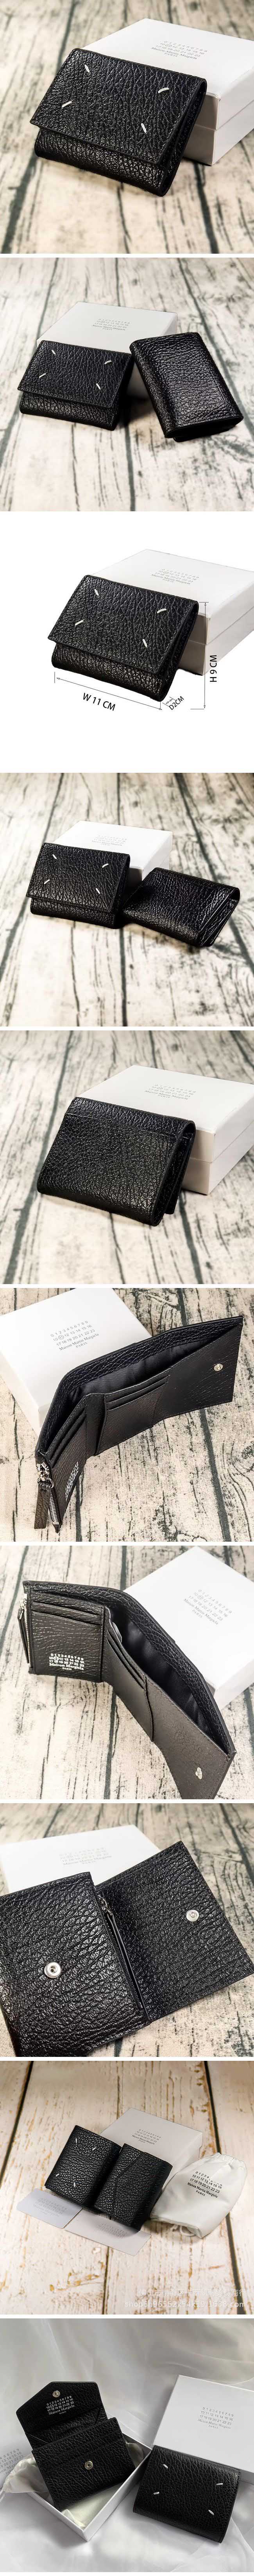 Maison Margiela Leather Small Wallet メゾンマルジェラ レザー スモール ウォレット 財布